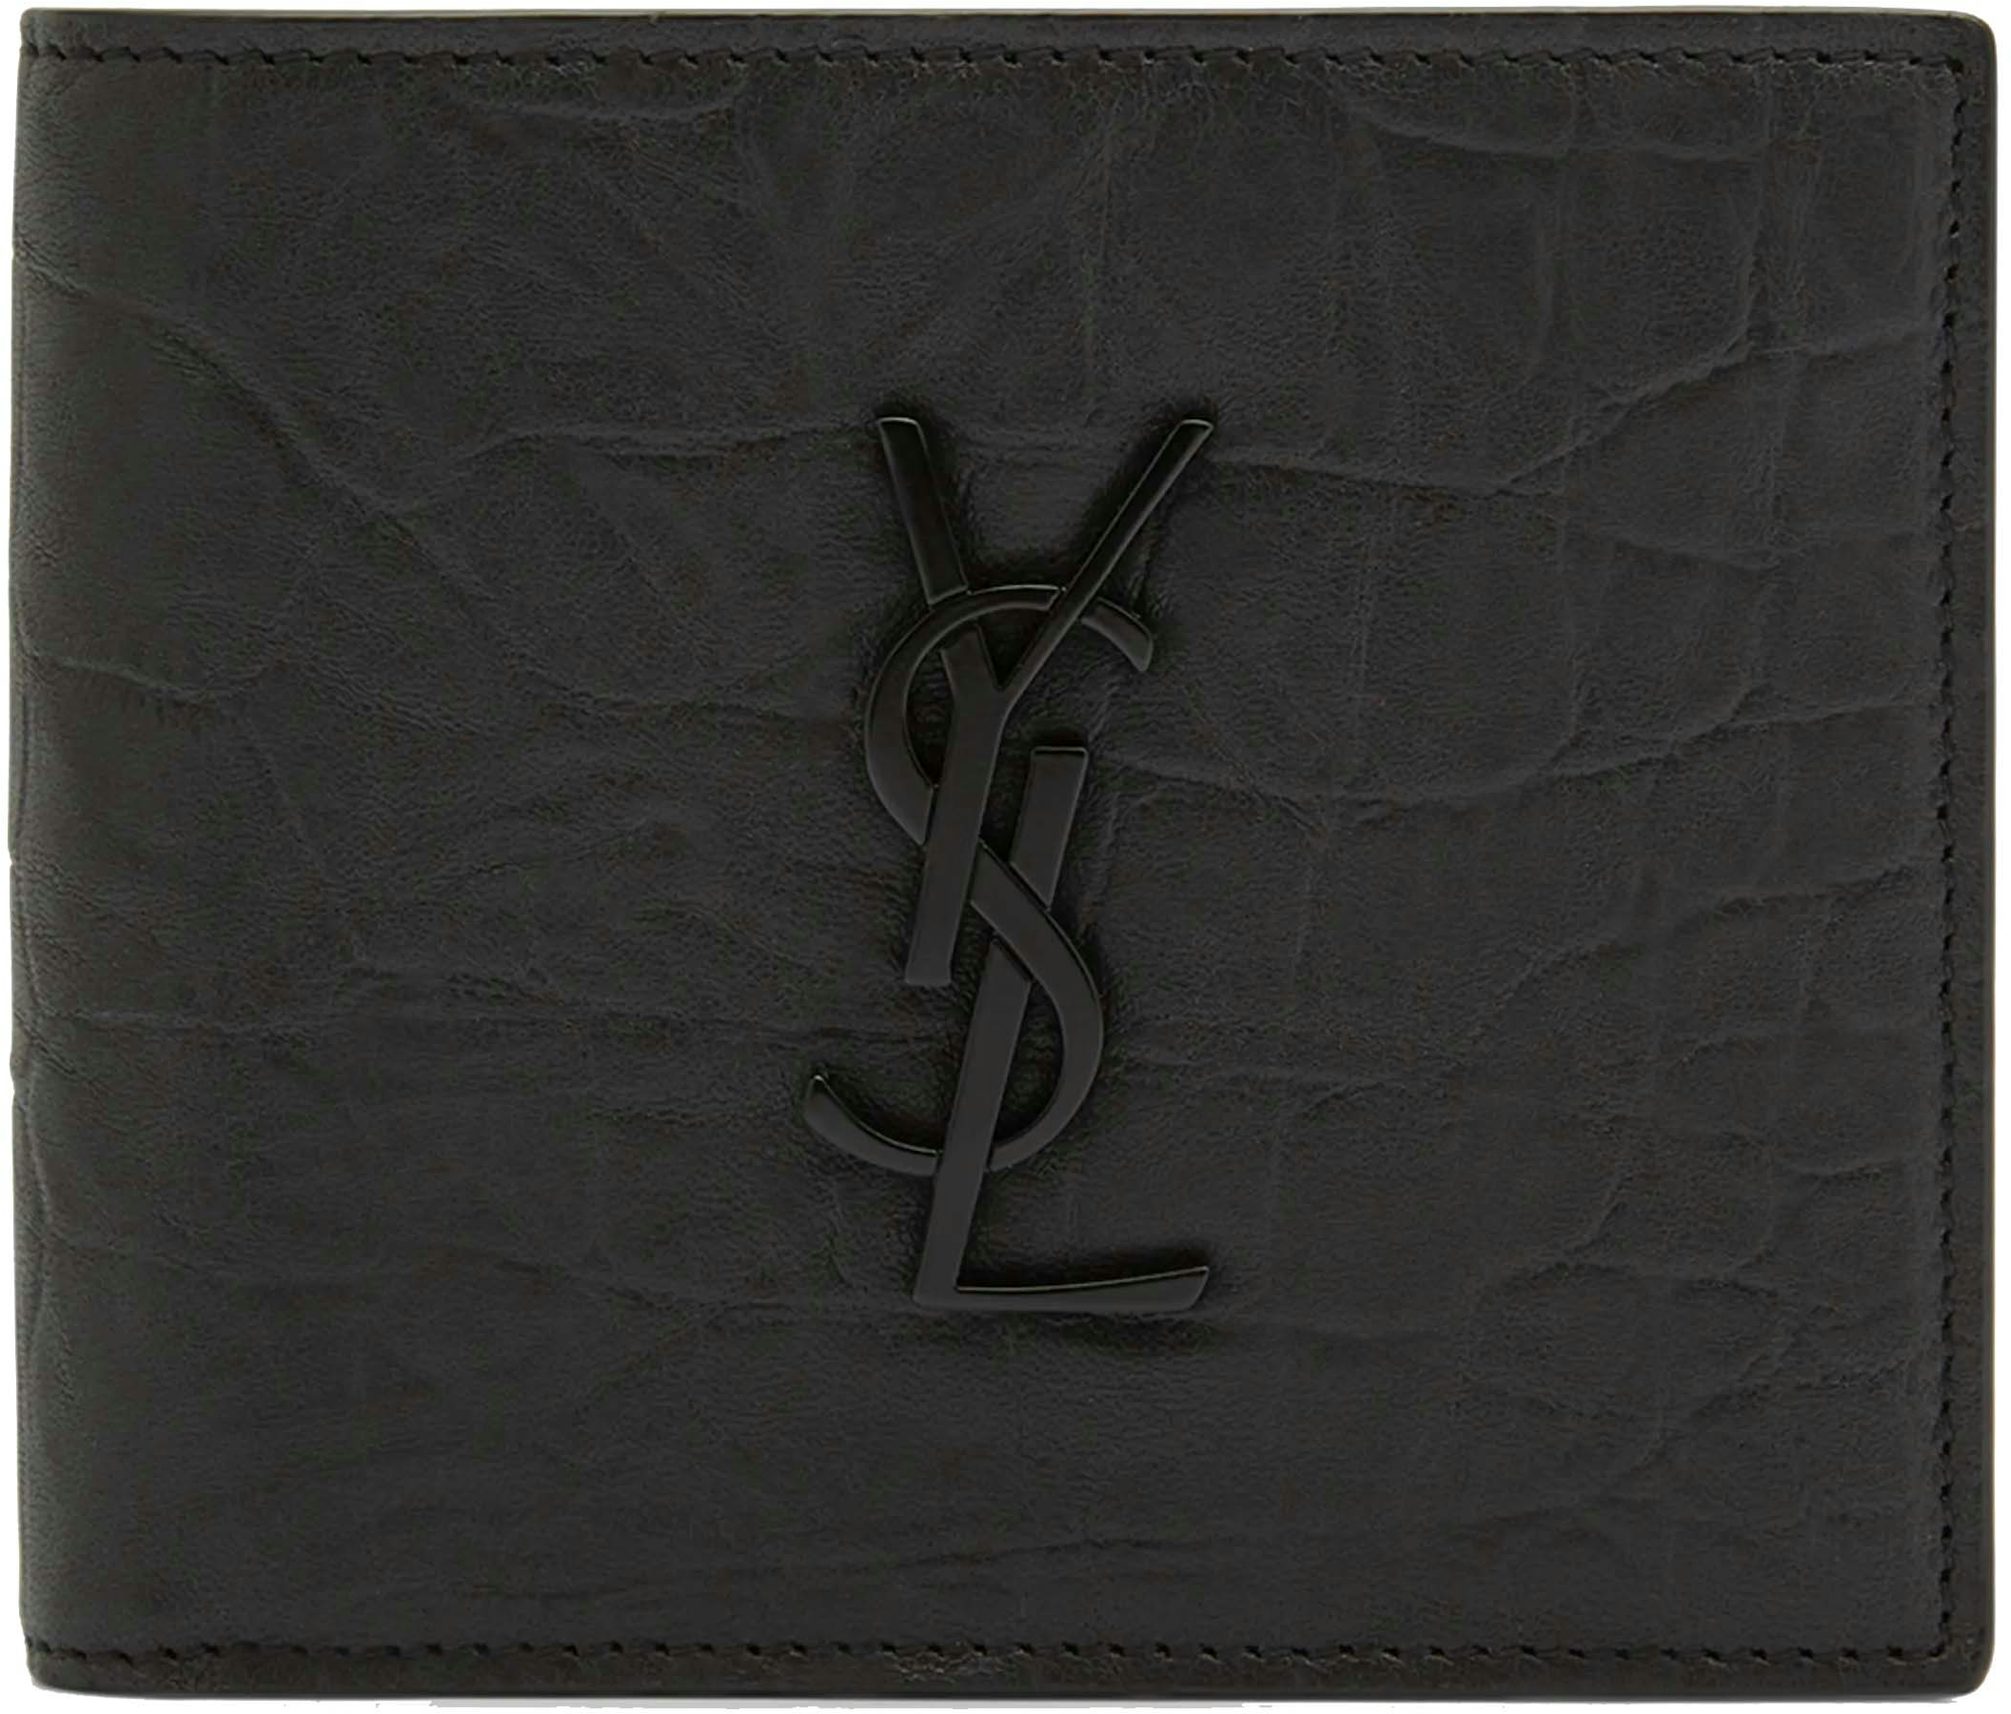 New YSL Saint Laurent Tiny Cassandre EAST/WEST WALLET CROCODILE black  leather